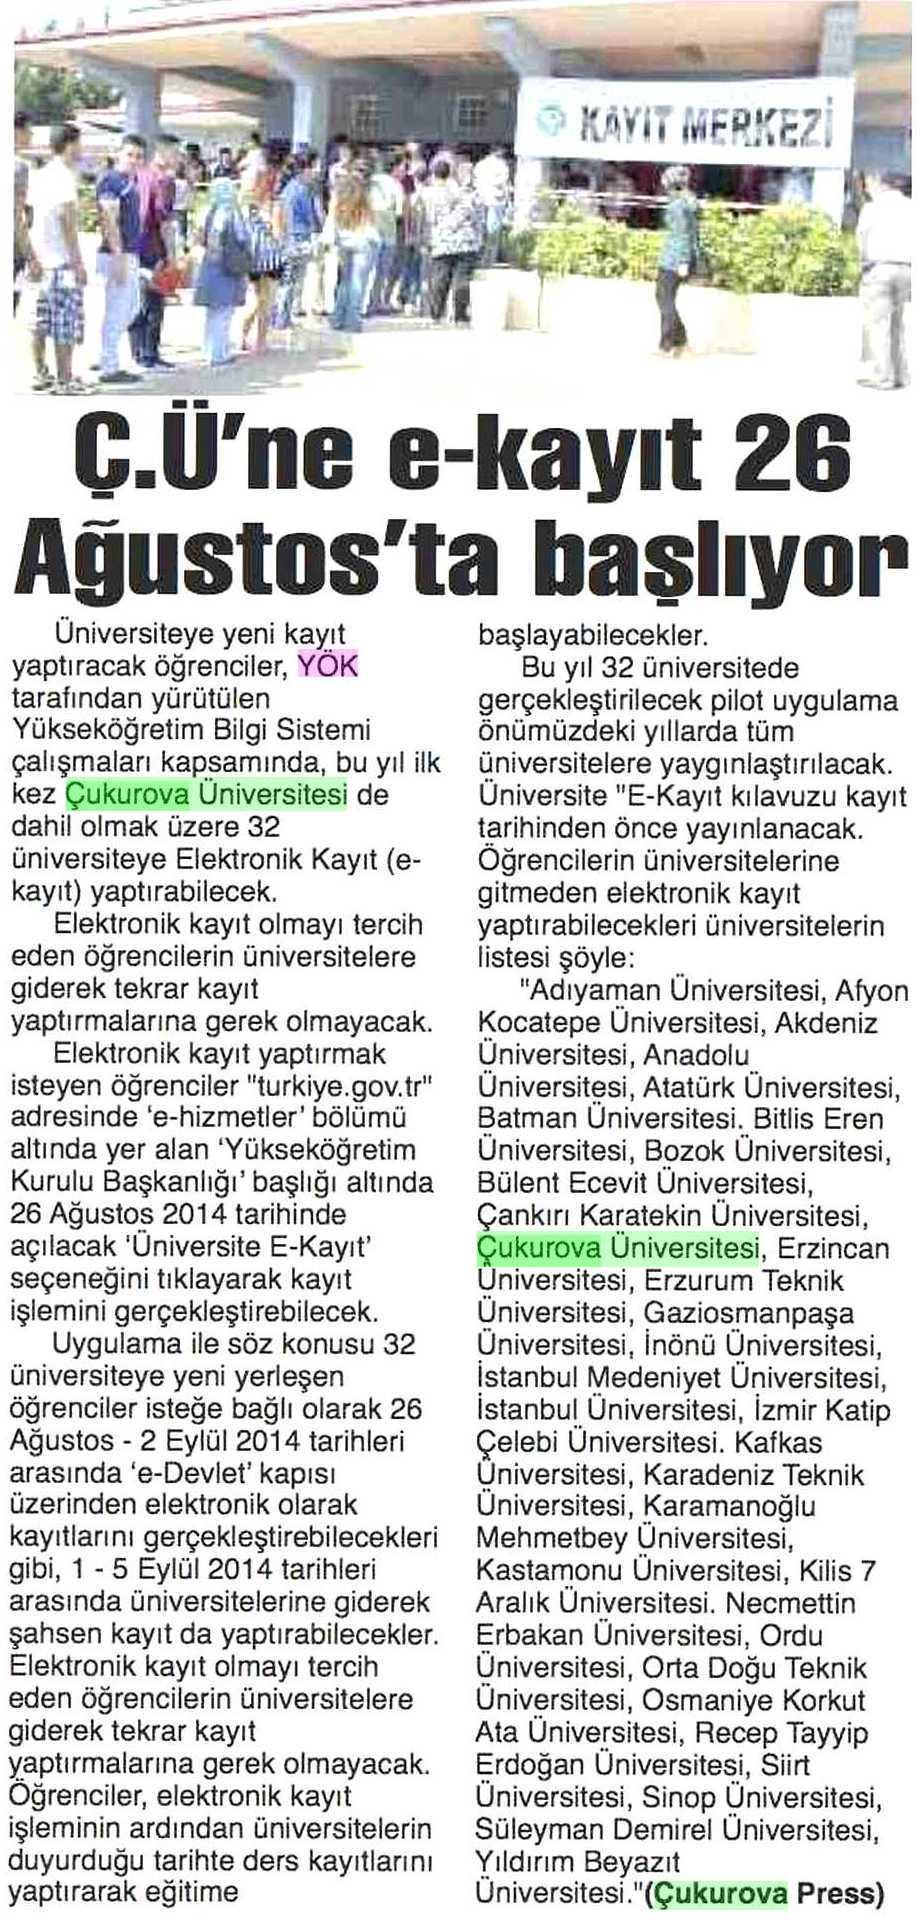 Ç.U NE E-KAYIT 26 AGUSTOS TA BASLIYOR Yayın Adı : Adana